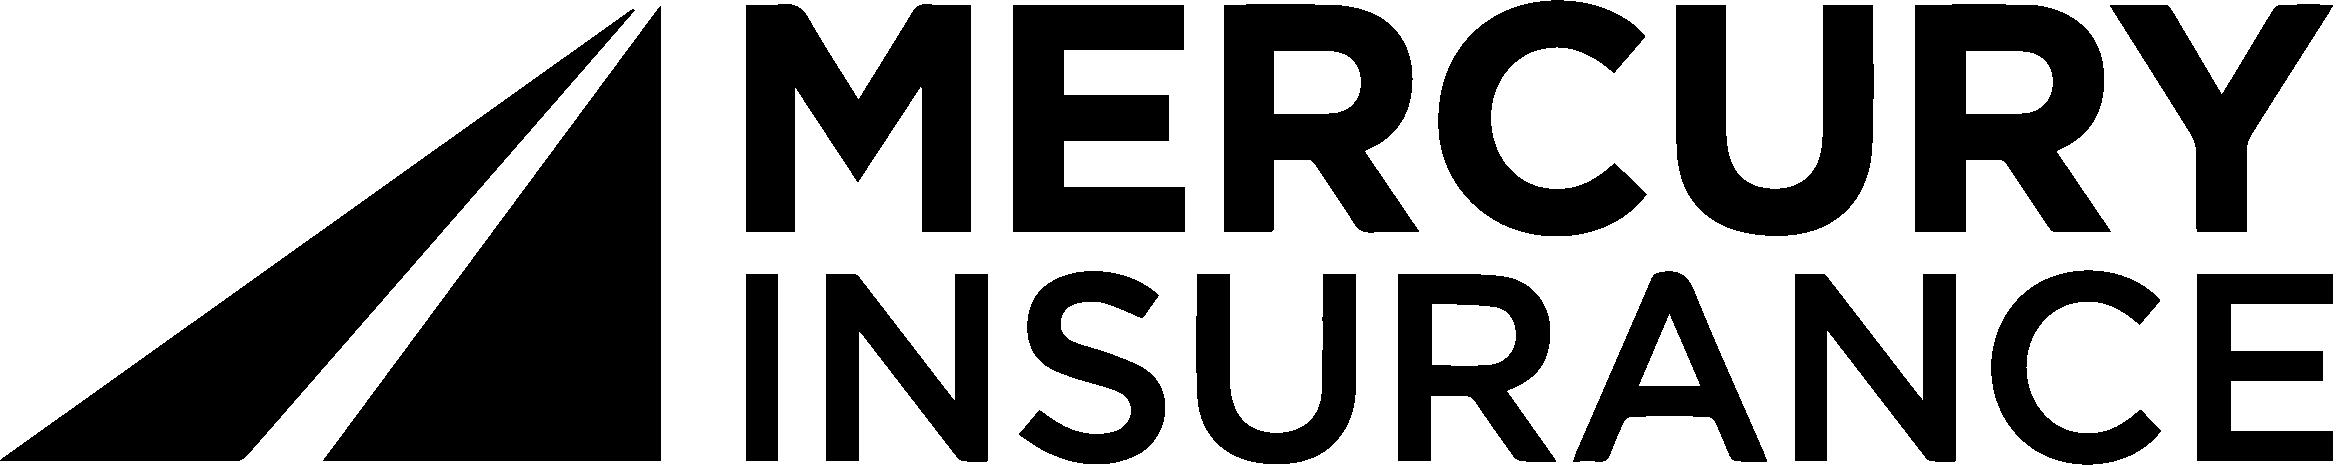 Company logo for Mercury Insurance